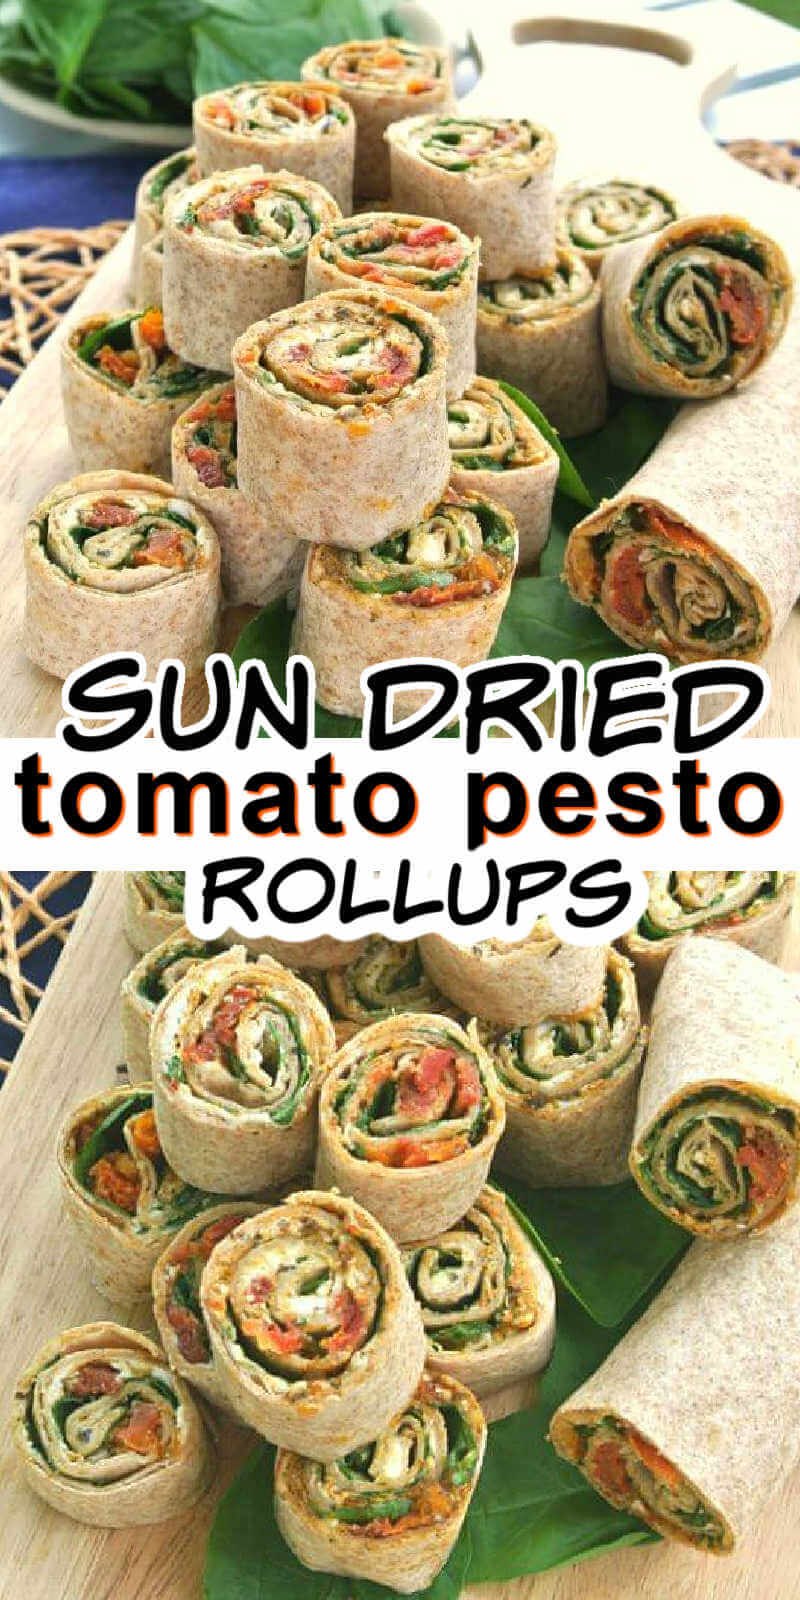 Sun-Dried Tomato Pesto Tortilla Rollups Recipe | Vegan in the Freezer